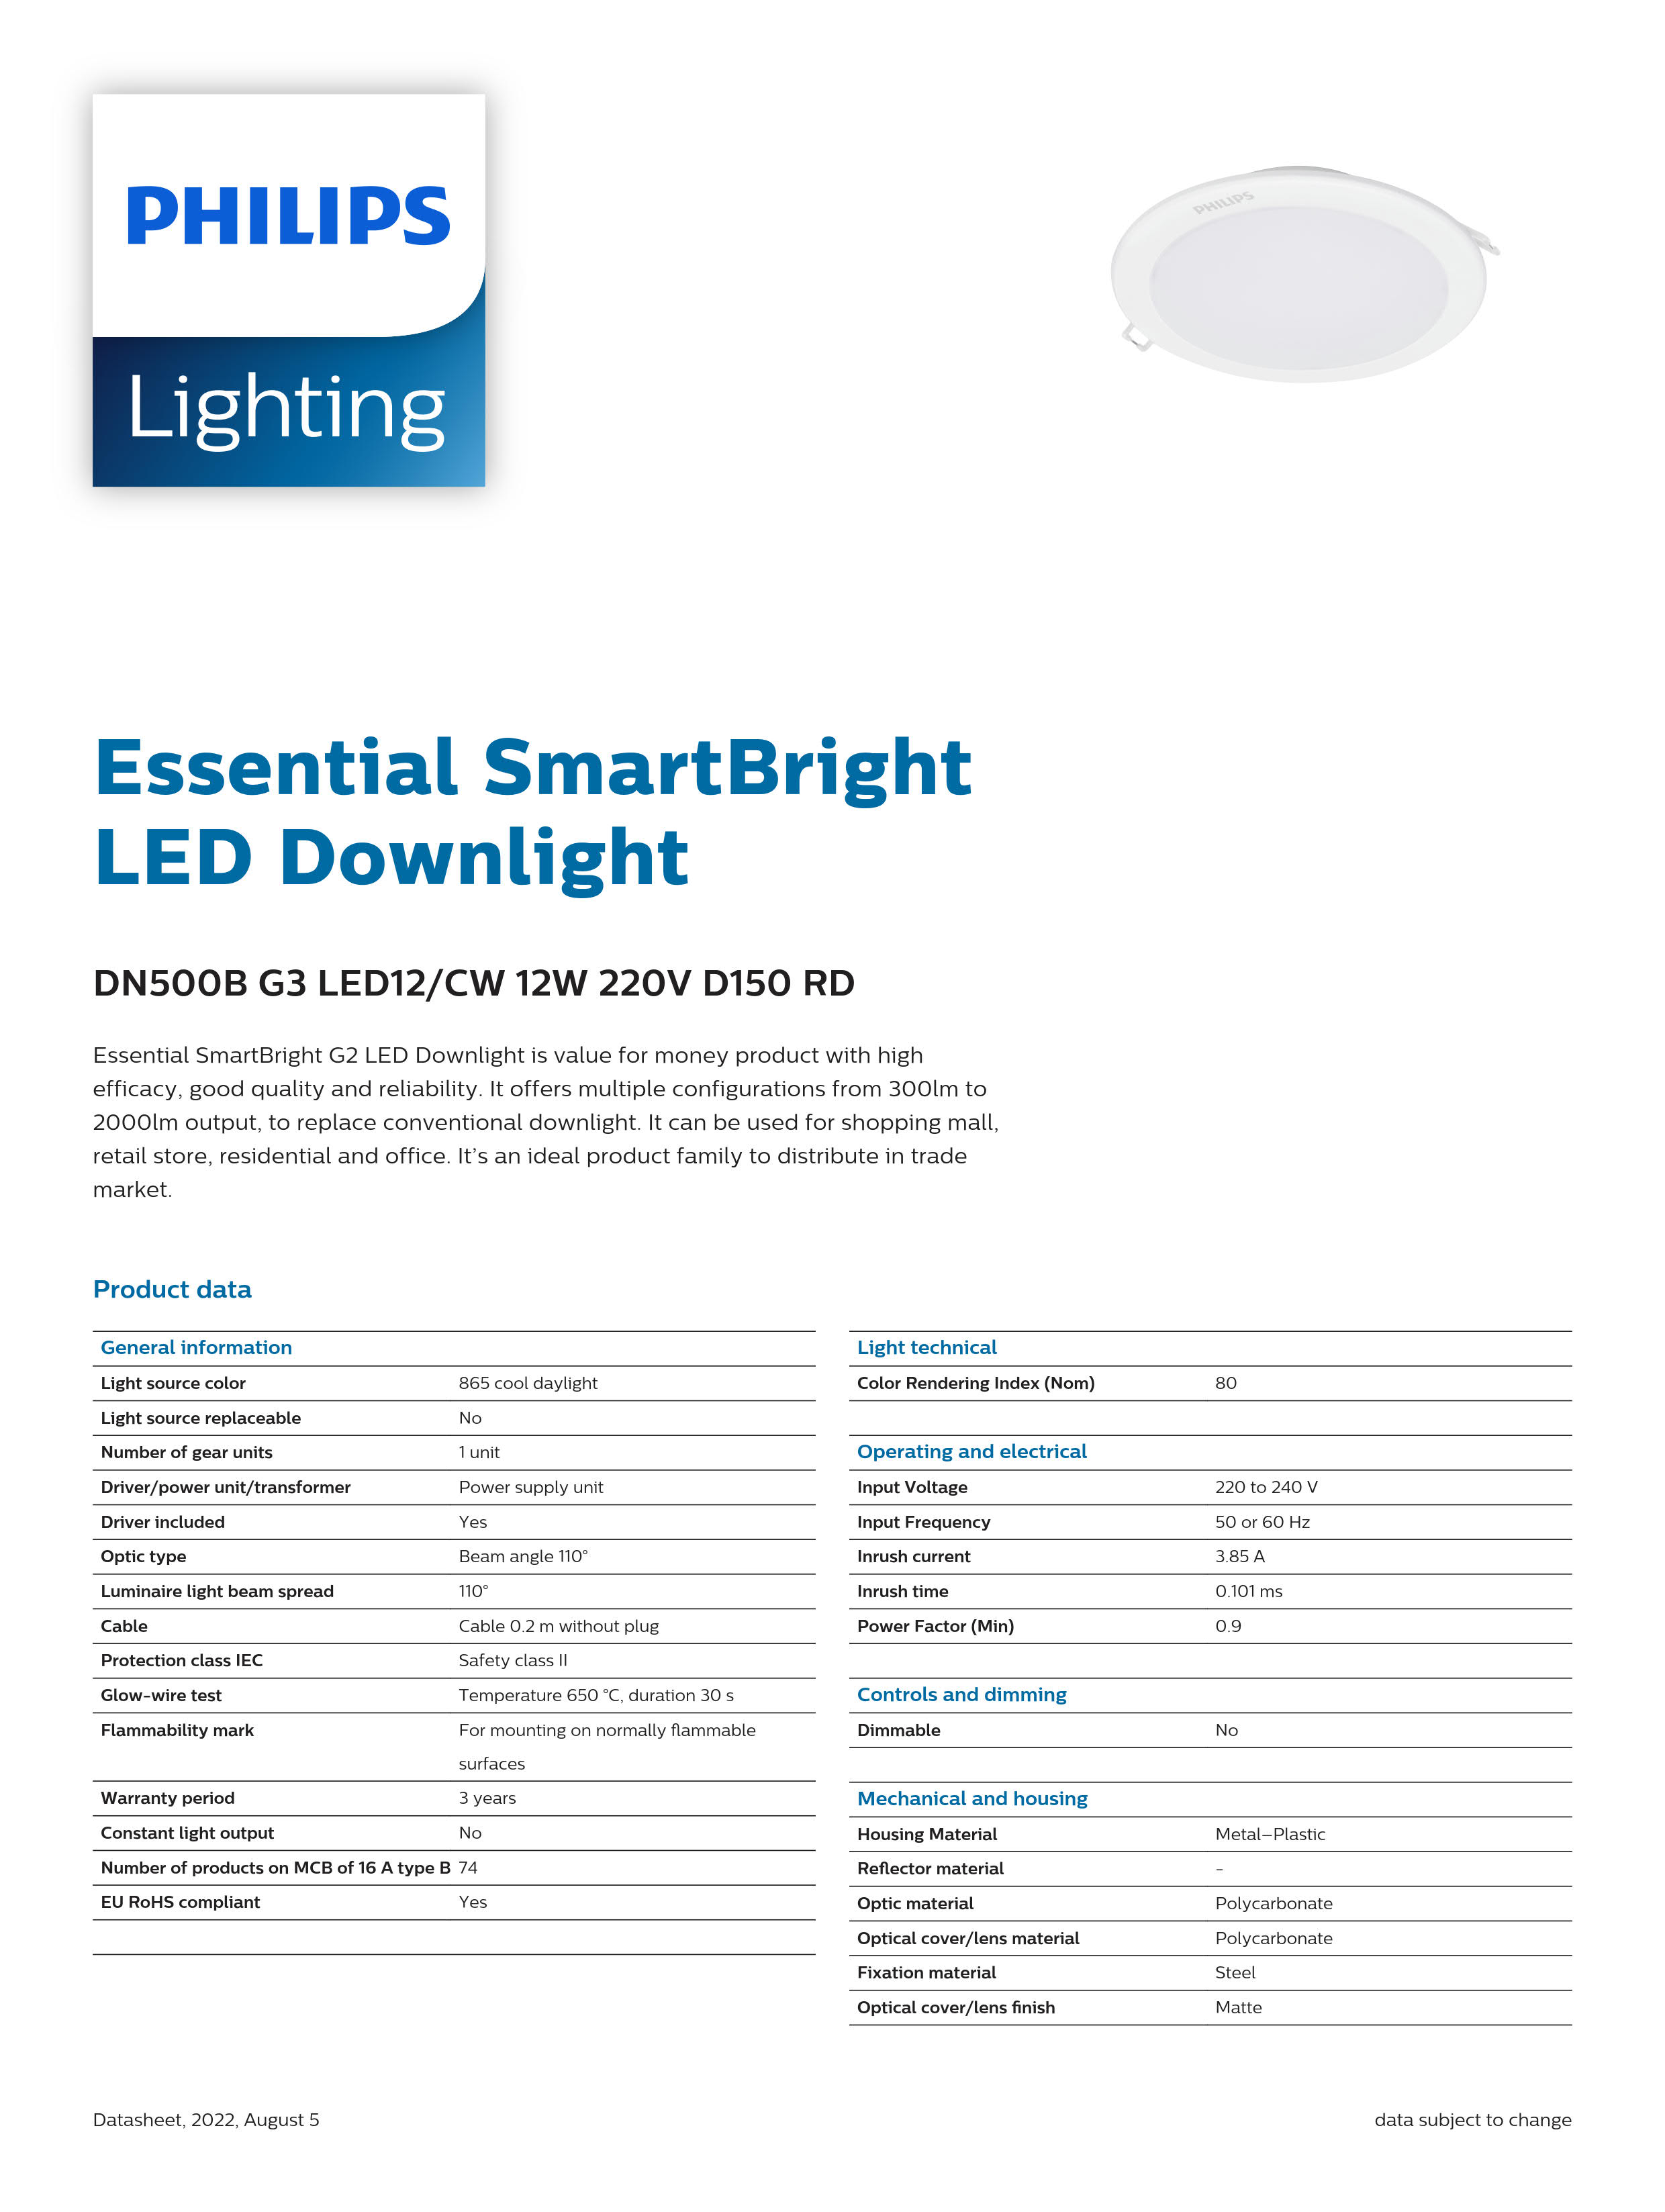 PHILIPS LED downlight DN500B G3 LED12/CW 12W 220V D150 RD 929002677740